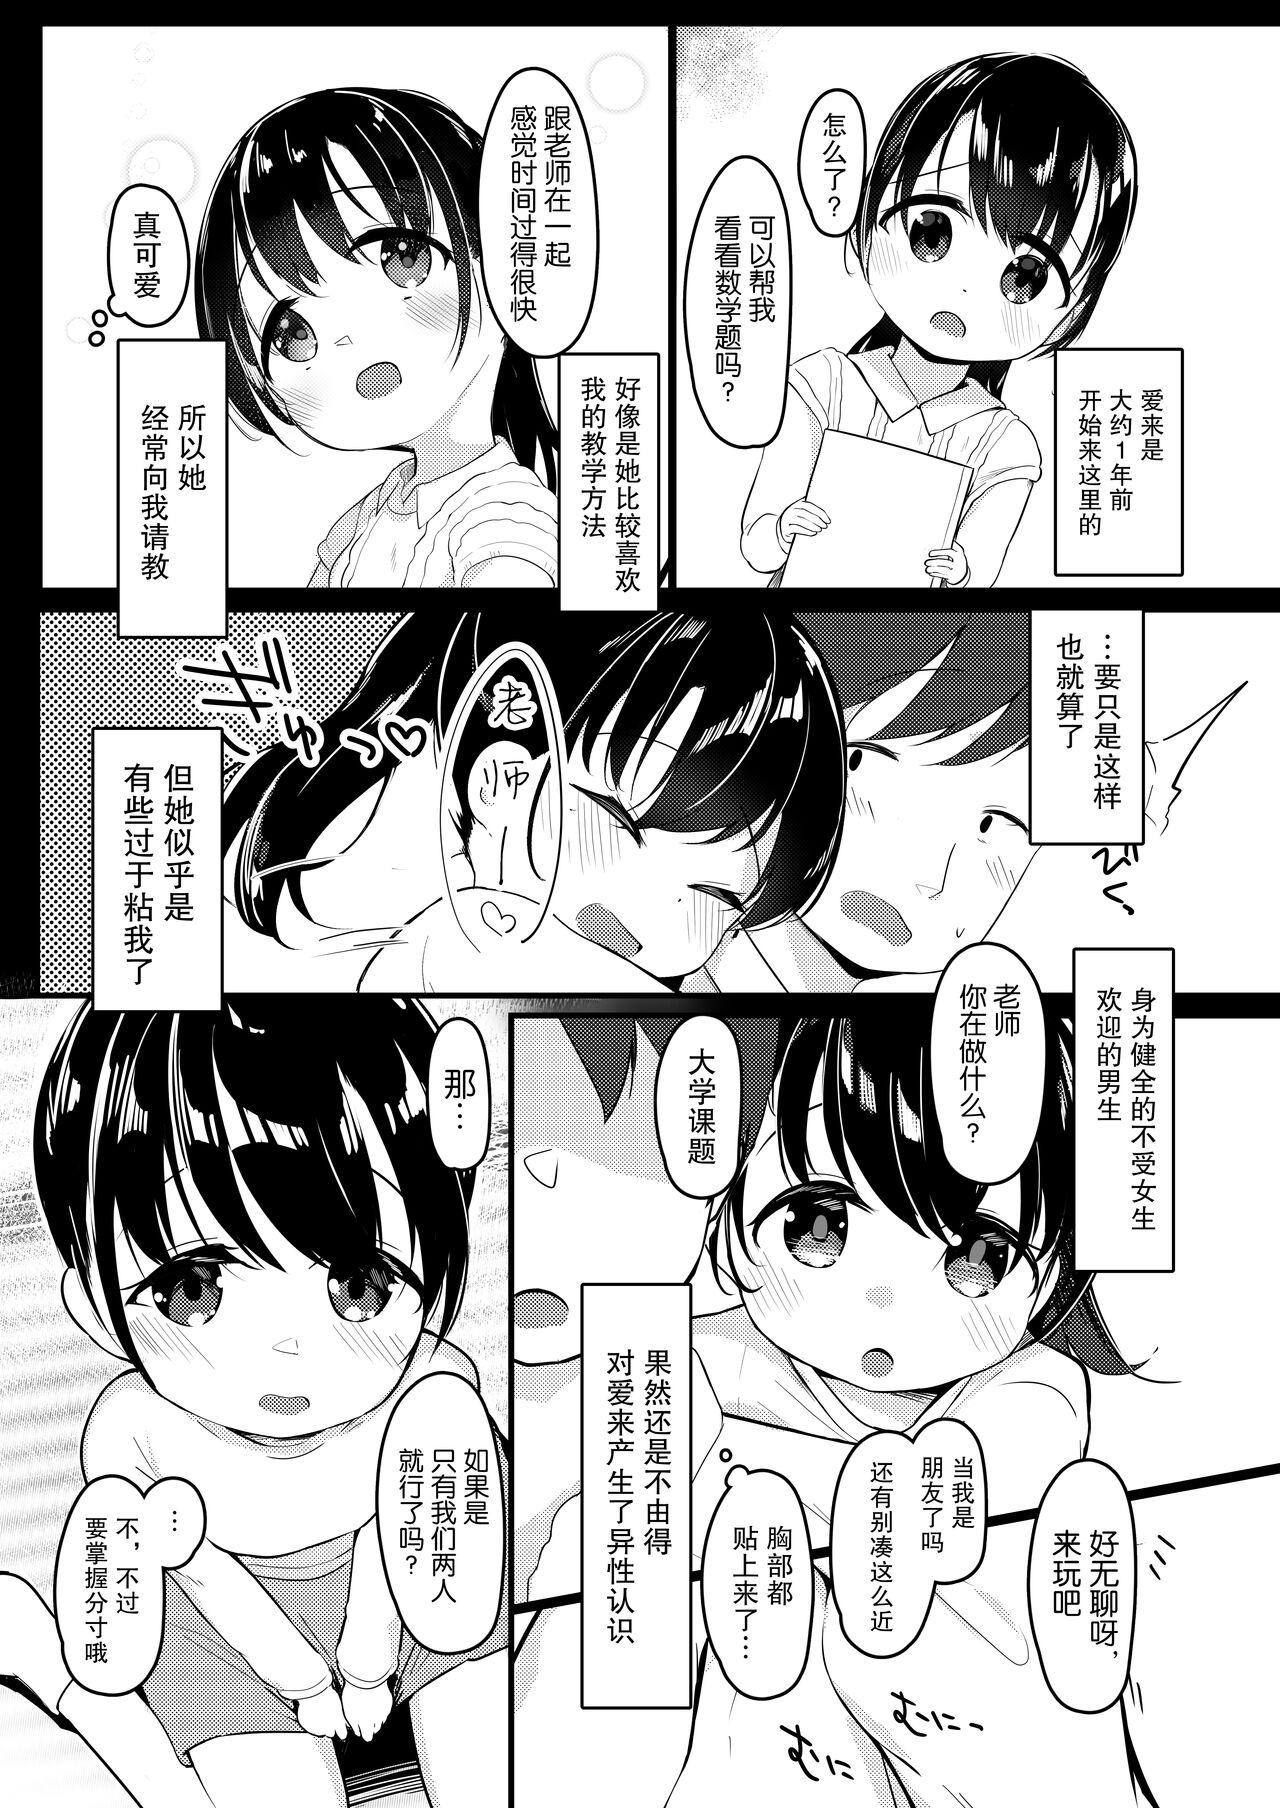 Bigcock Watashi ga Kanojo ja Dame desu ka? 2 - Original Masterbation - Page 5